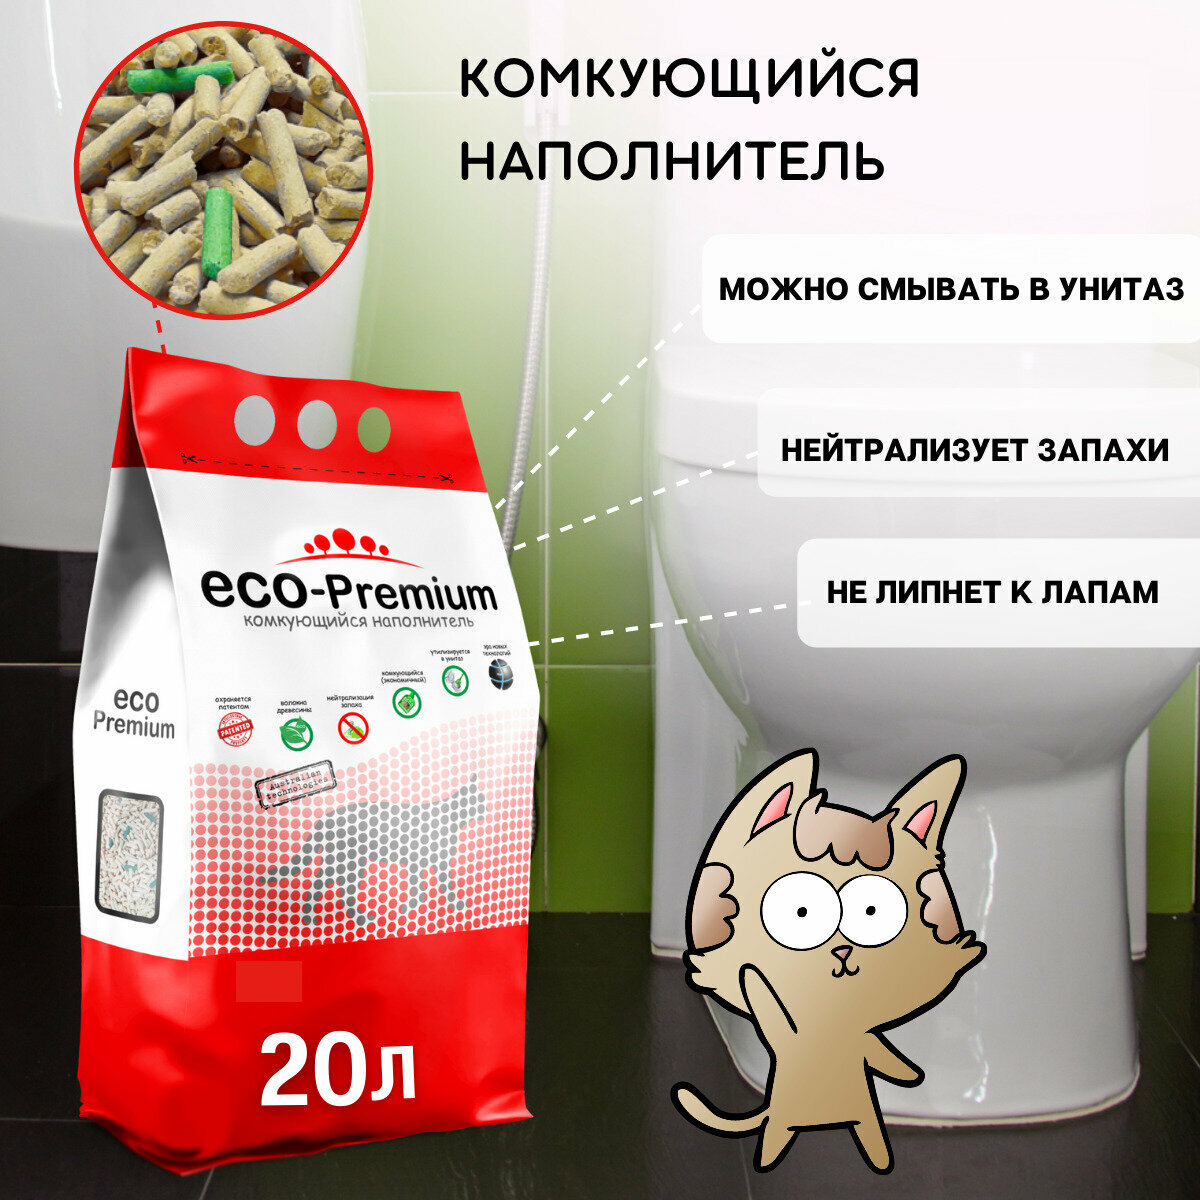 Наполнитель комкующийся ECO-Premium, 7.6 кг - фото №5